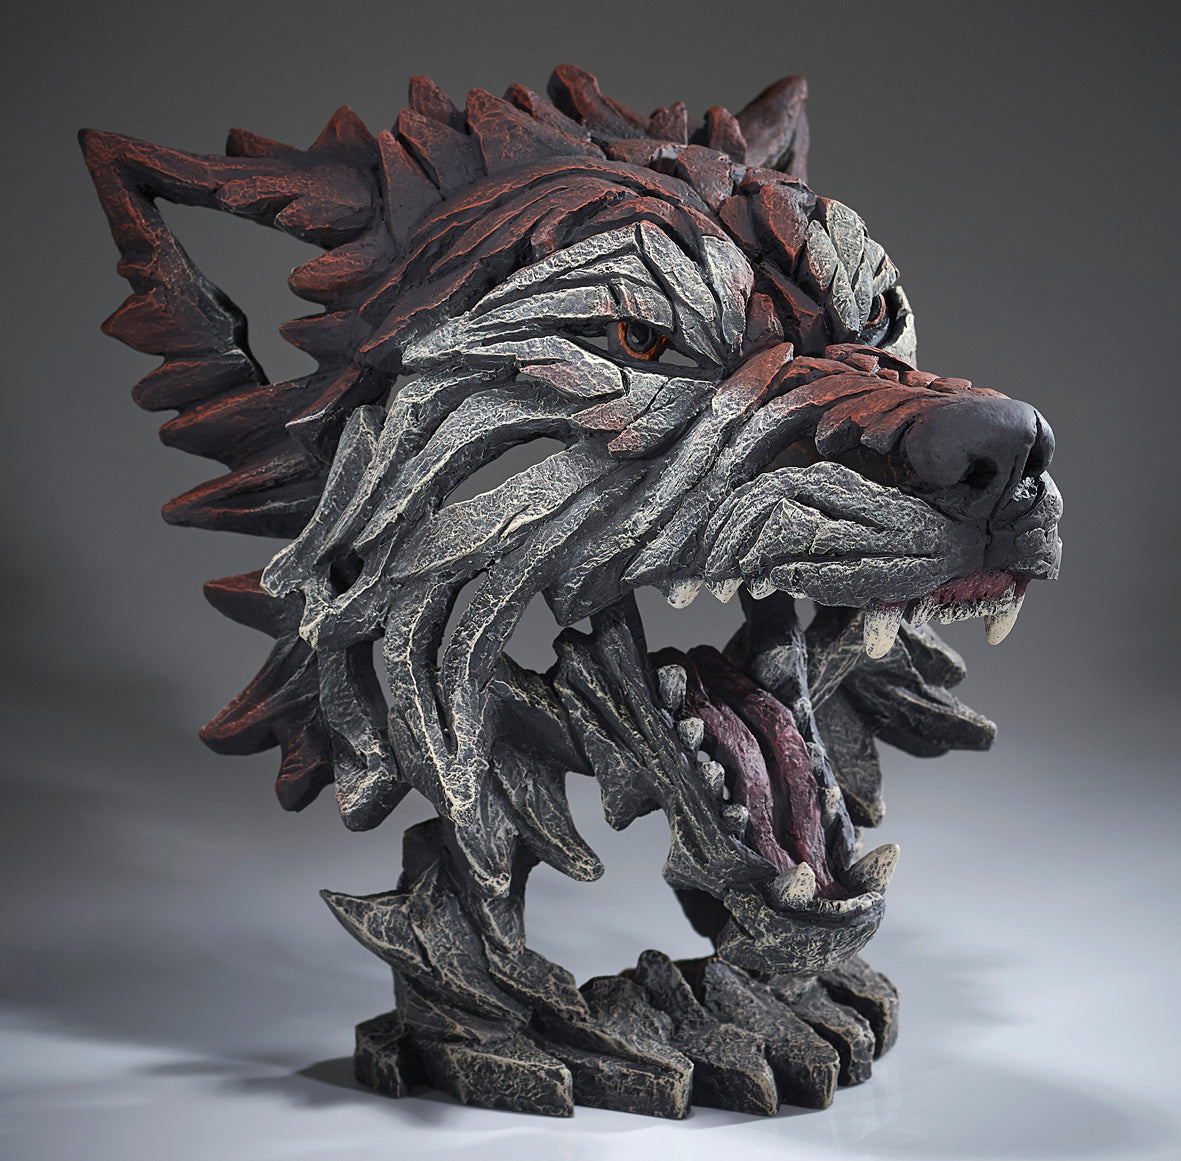 Edge Sculpture Wolf Bust Timber by Matt Buckley